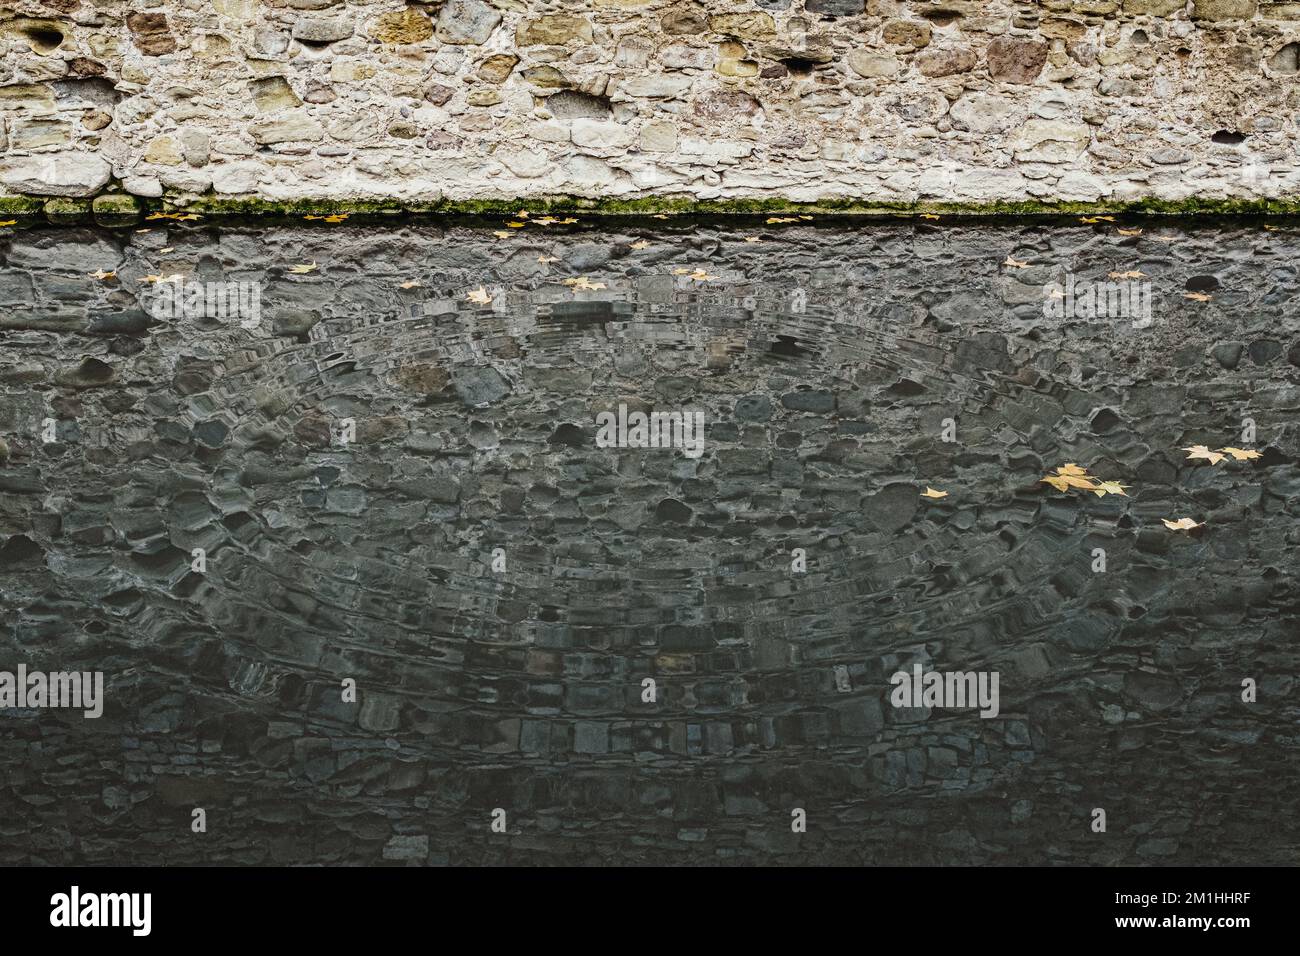 Andamento ad onda concentrica nell'acqua del torrente e riflesso dell'antica parete di pietra lungo la riva. Foto Stock